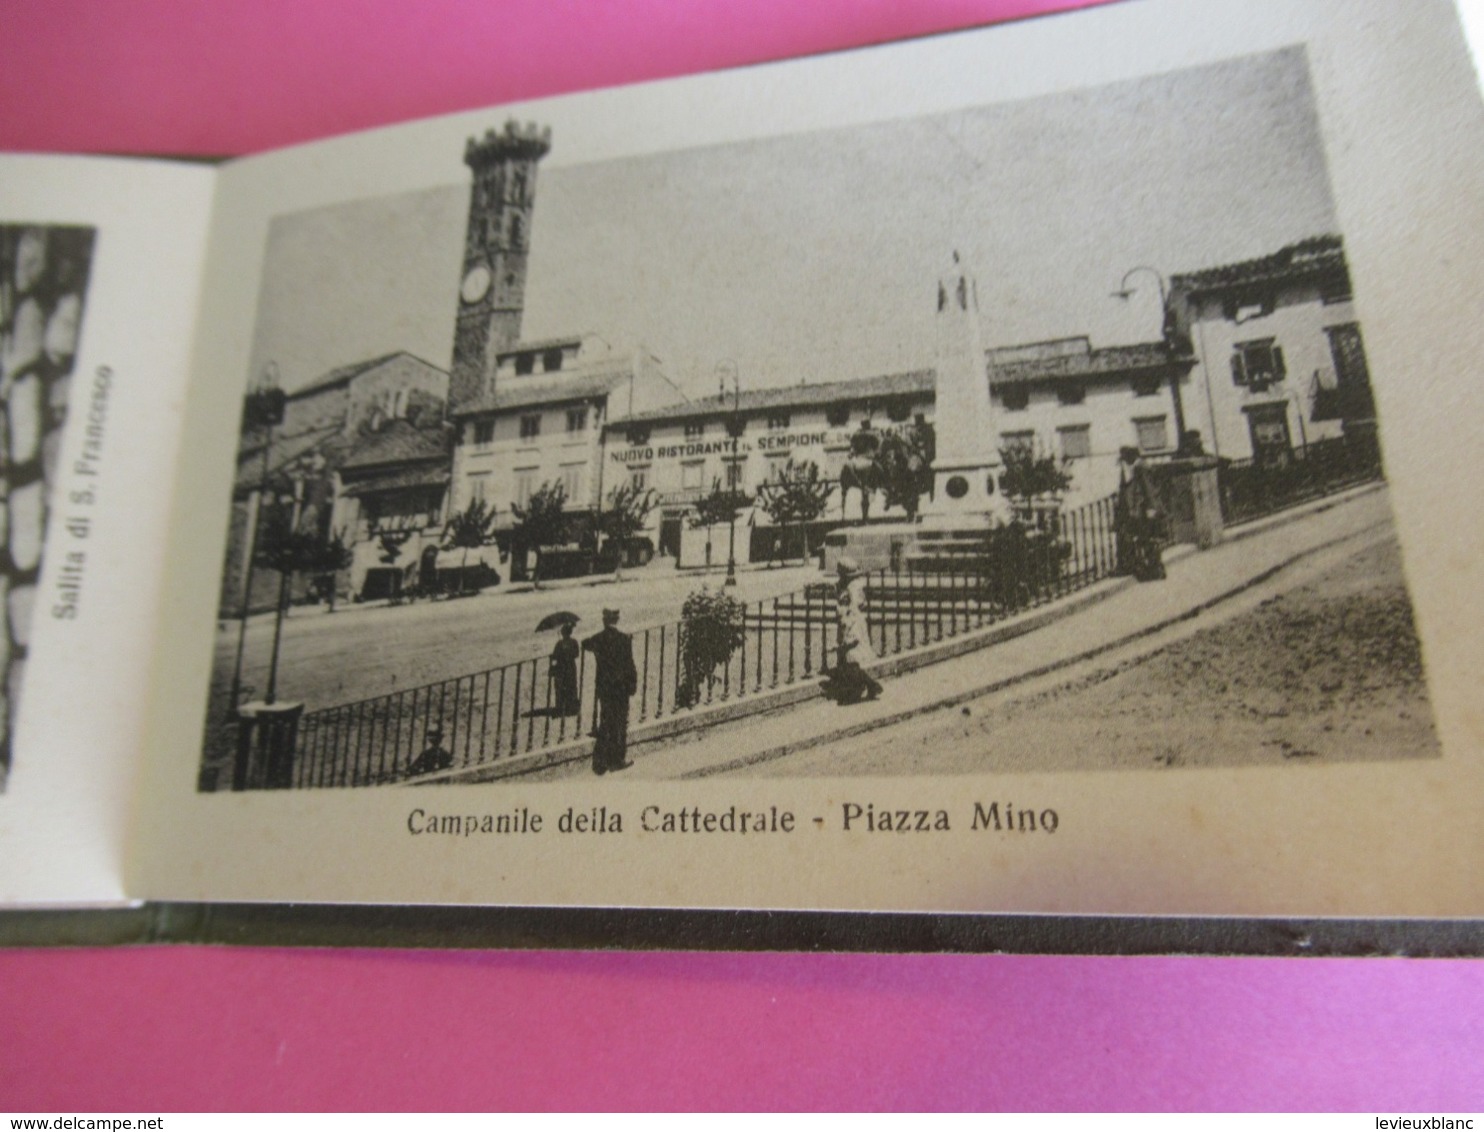 Petit Livret  touristique/24 vues/Pliage accordéon/RICORDO di FIESOLE/Florence/Toscane/Italie/ Vers 1900-20    PGC369